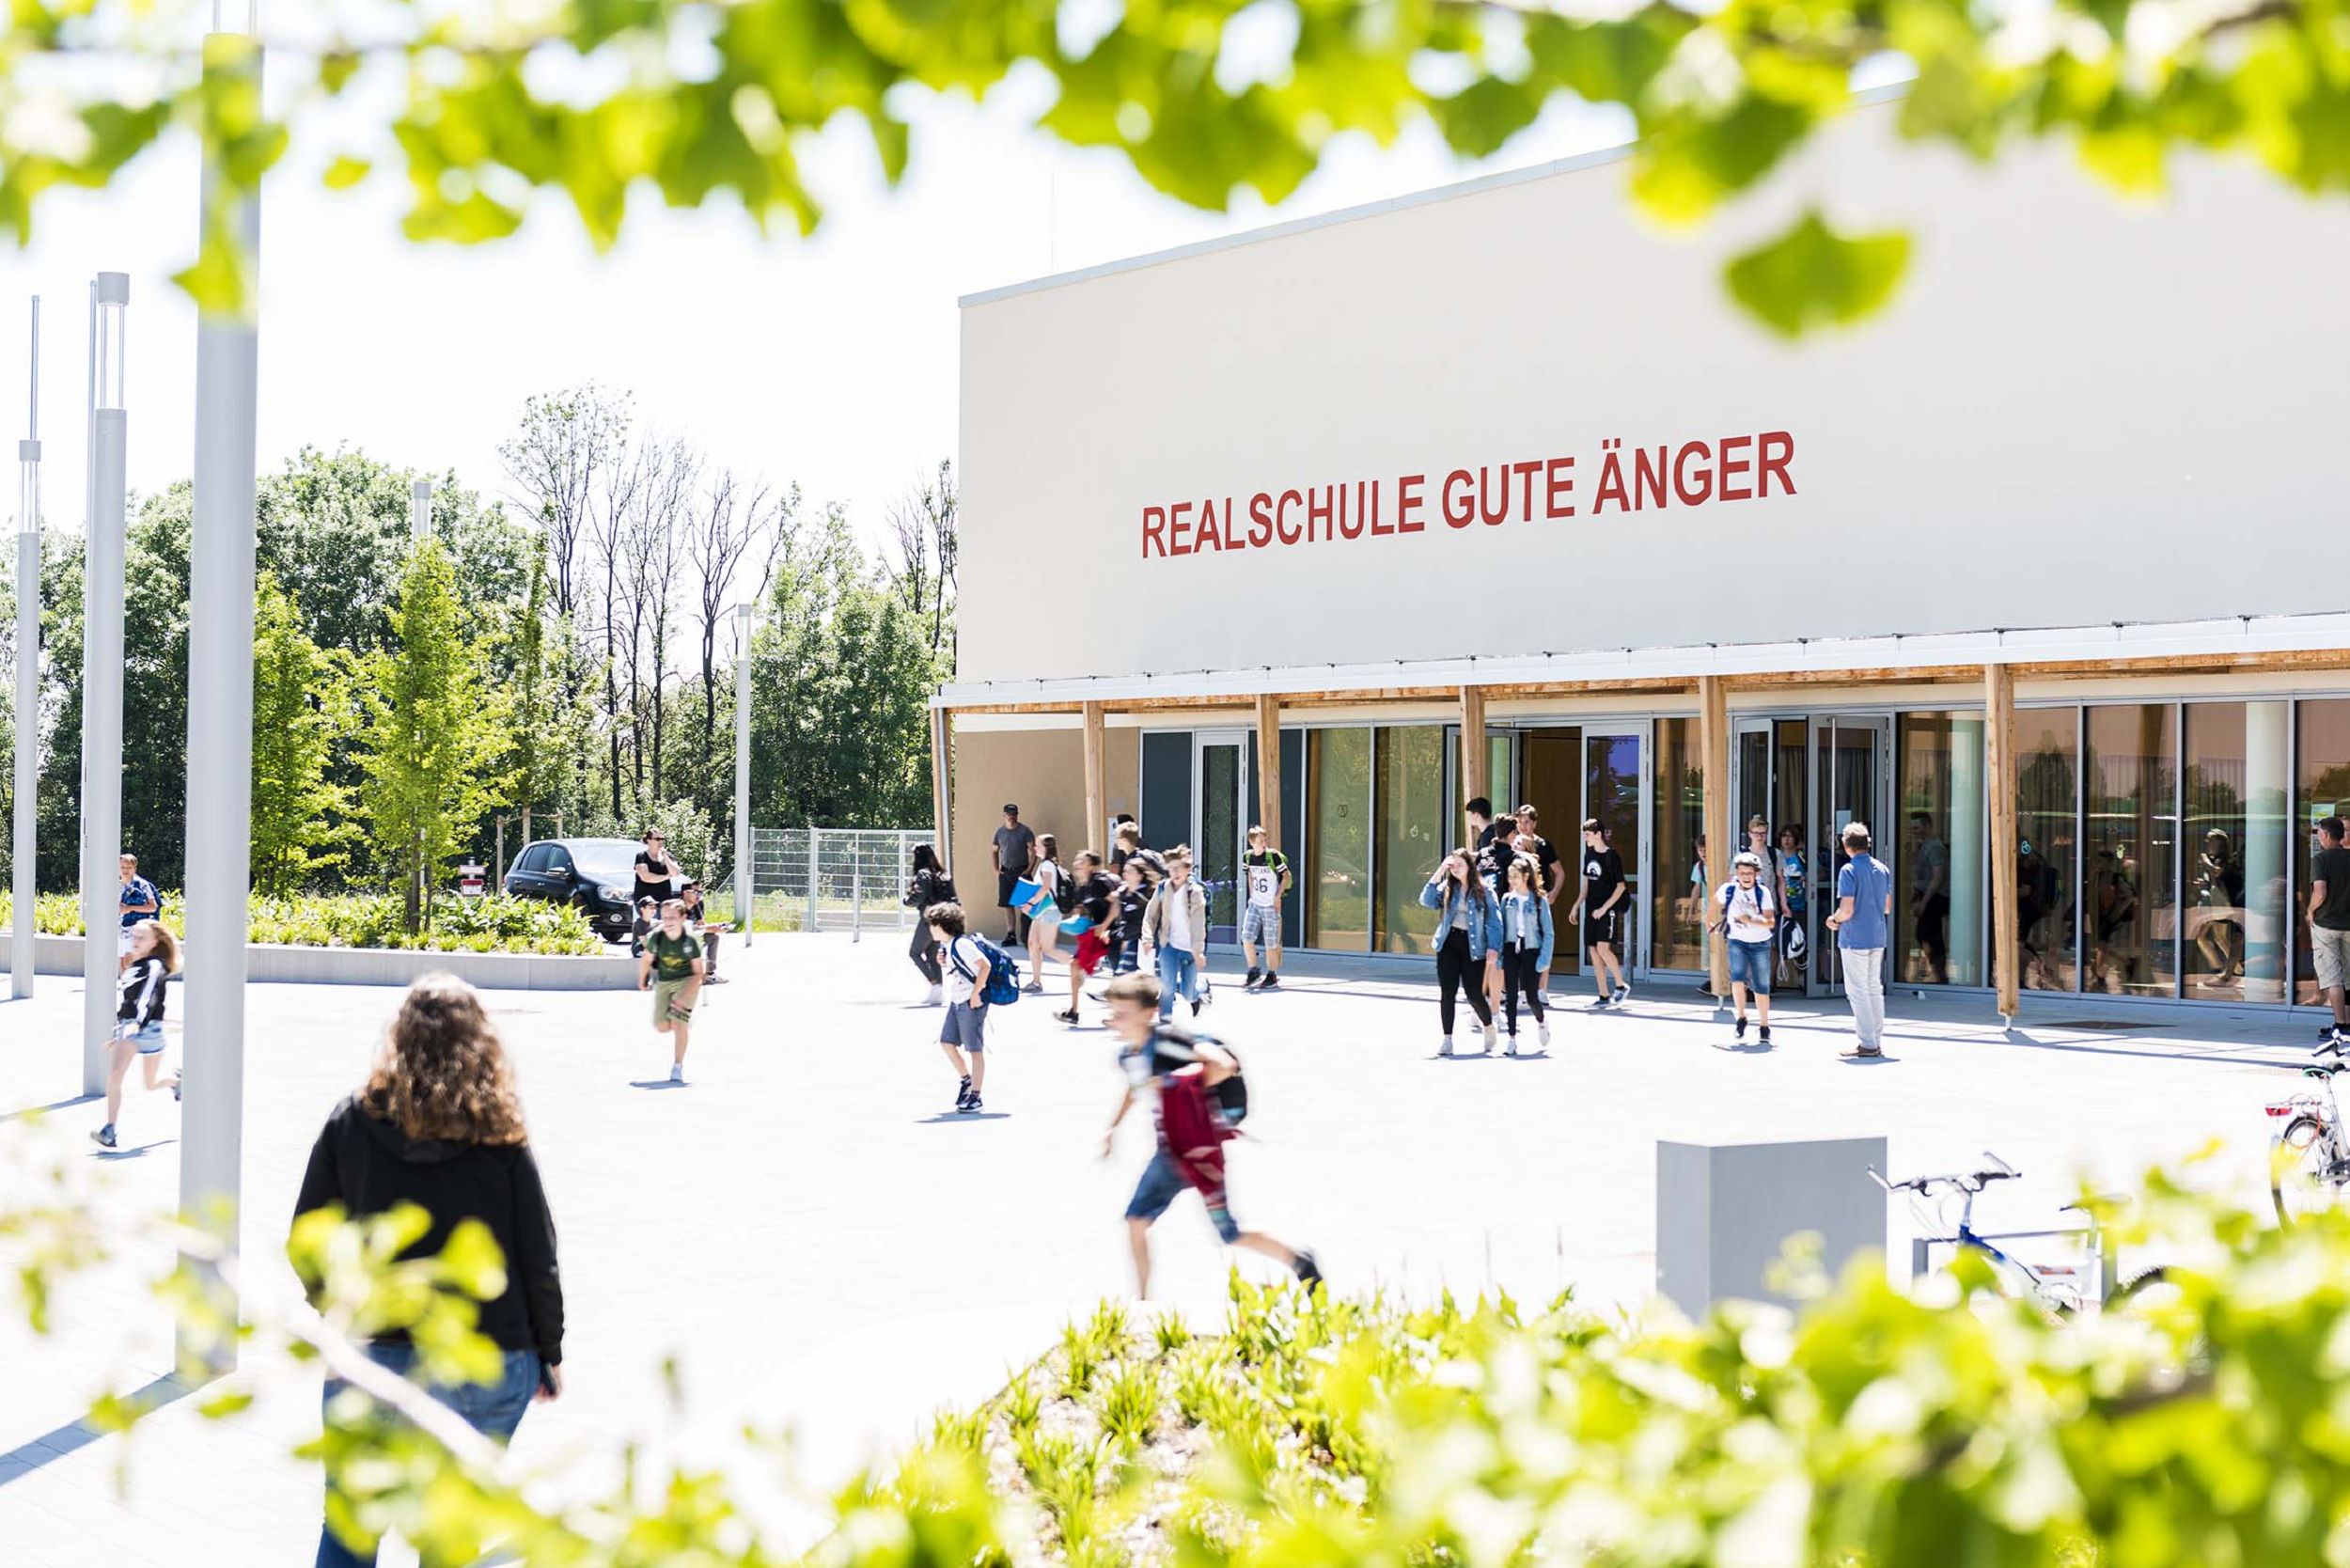 Bild: Vorplatz der Realschule Gute Änger in Freising, Foto: Johann Hinrichs Photography